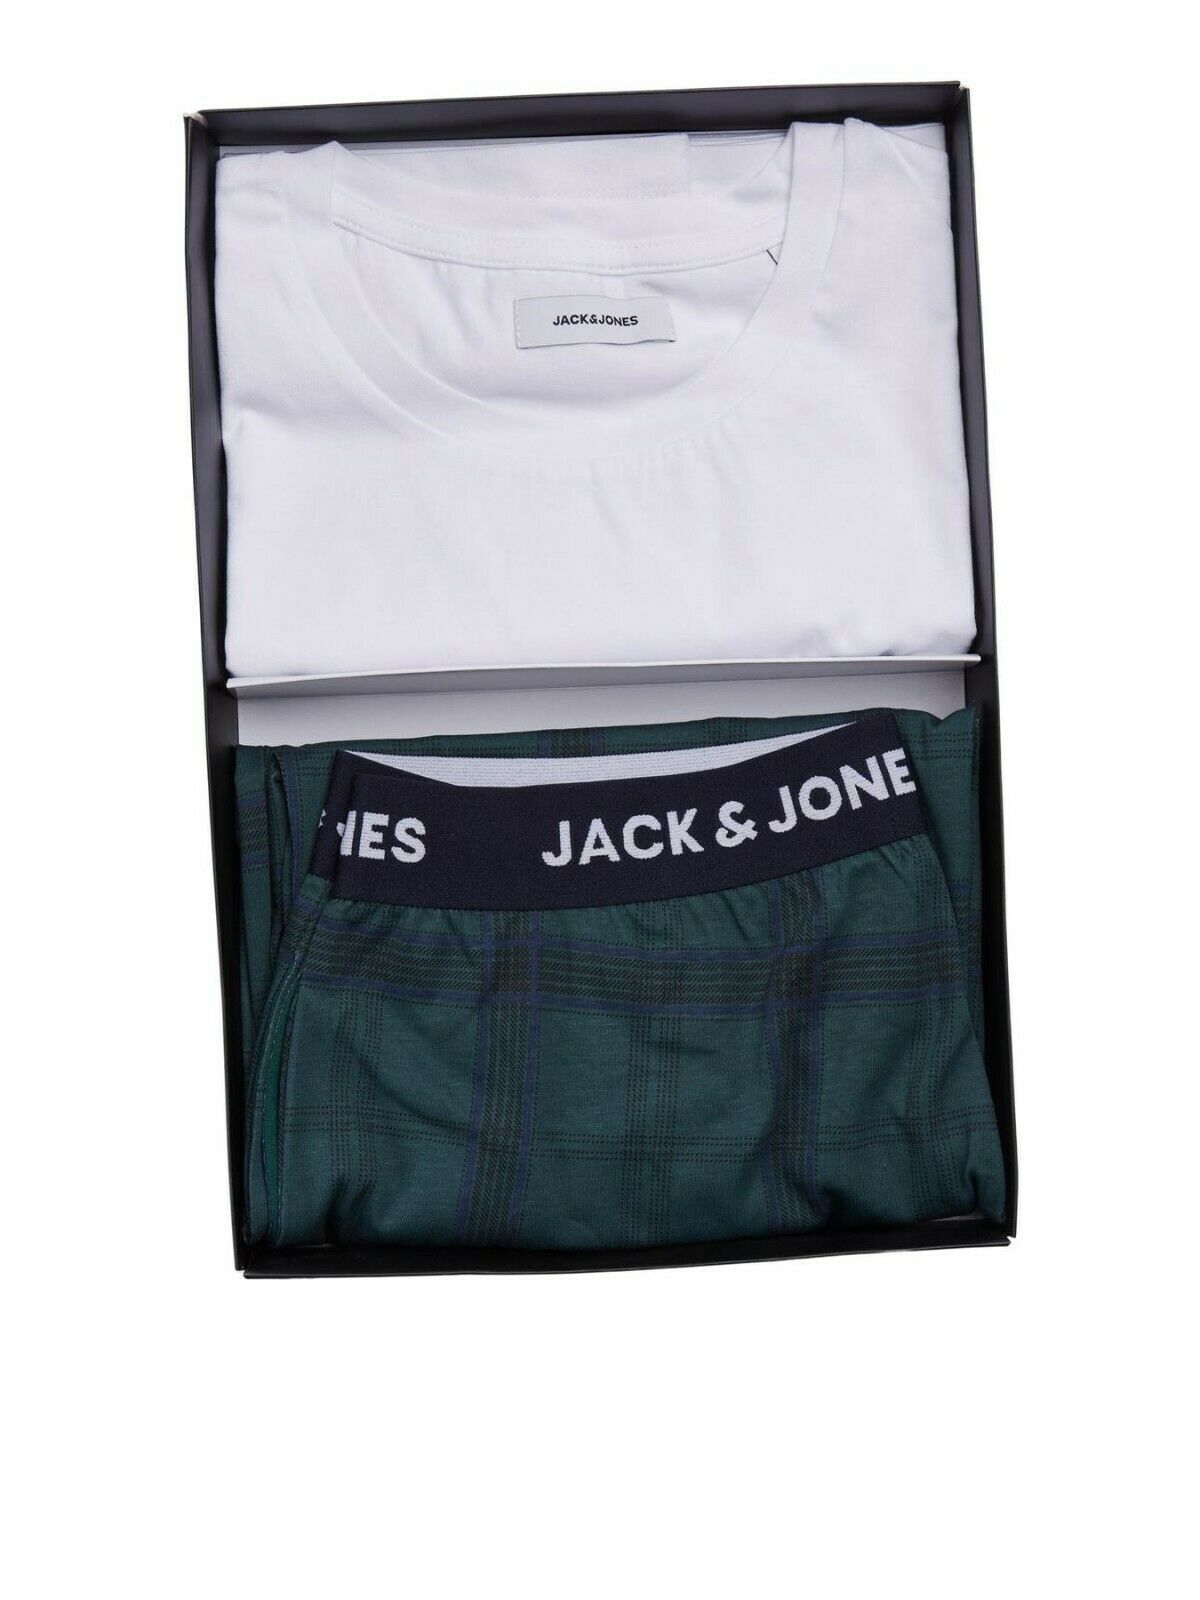 Jack & Jones 'Train' Pyjama Set in Green